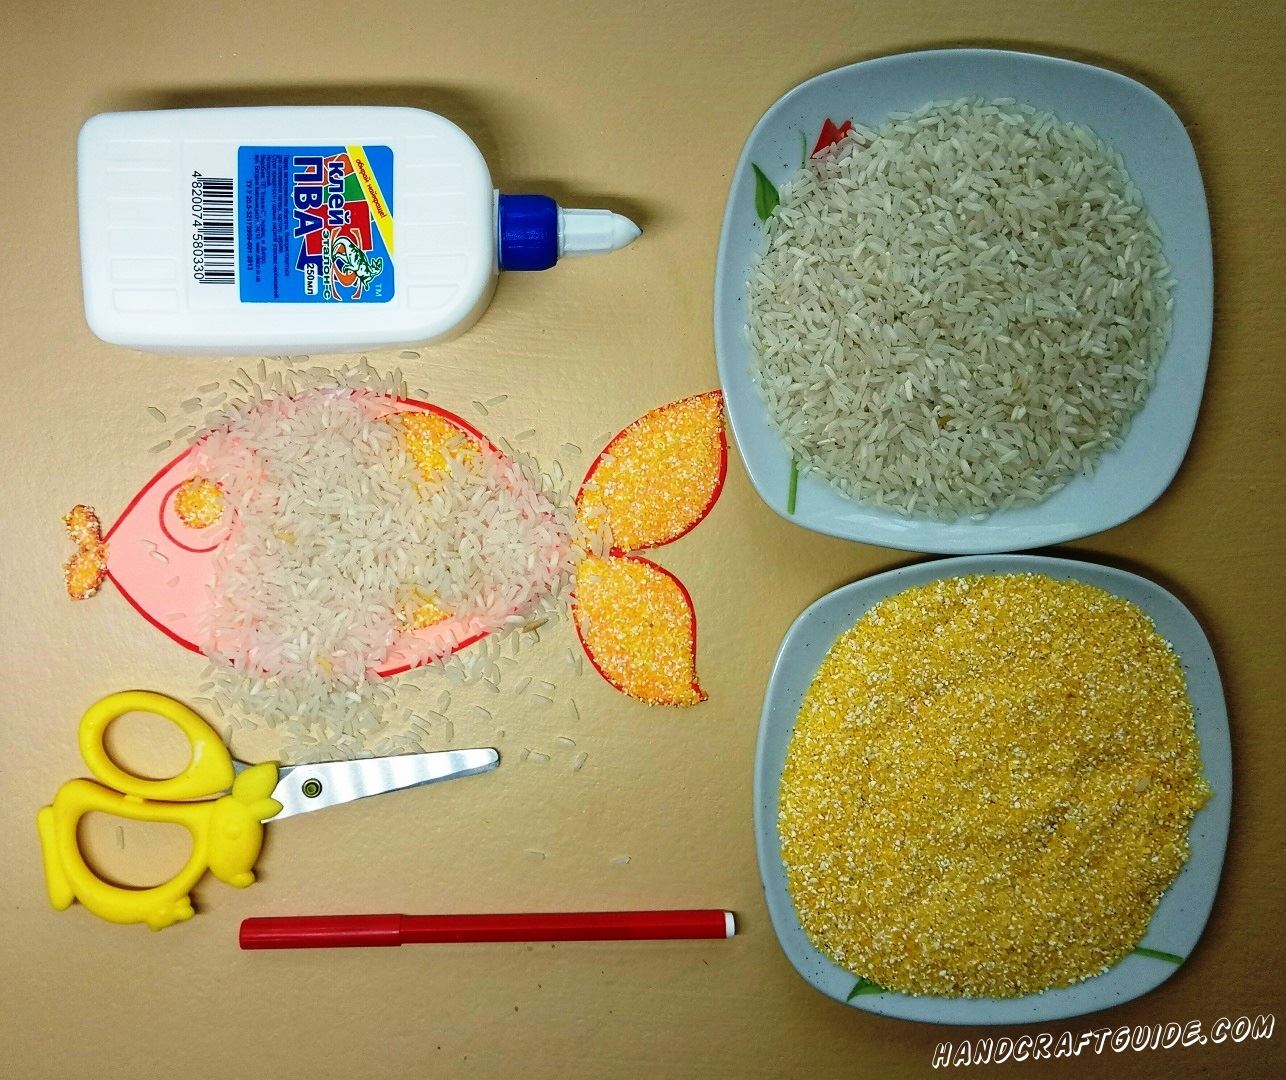 рыба из риса и пшена для детей своими руками